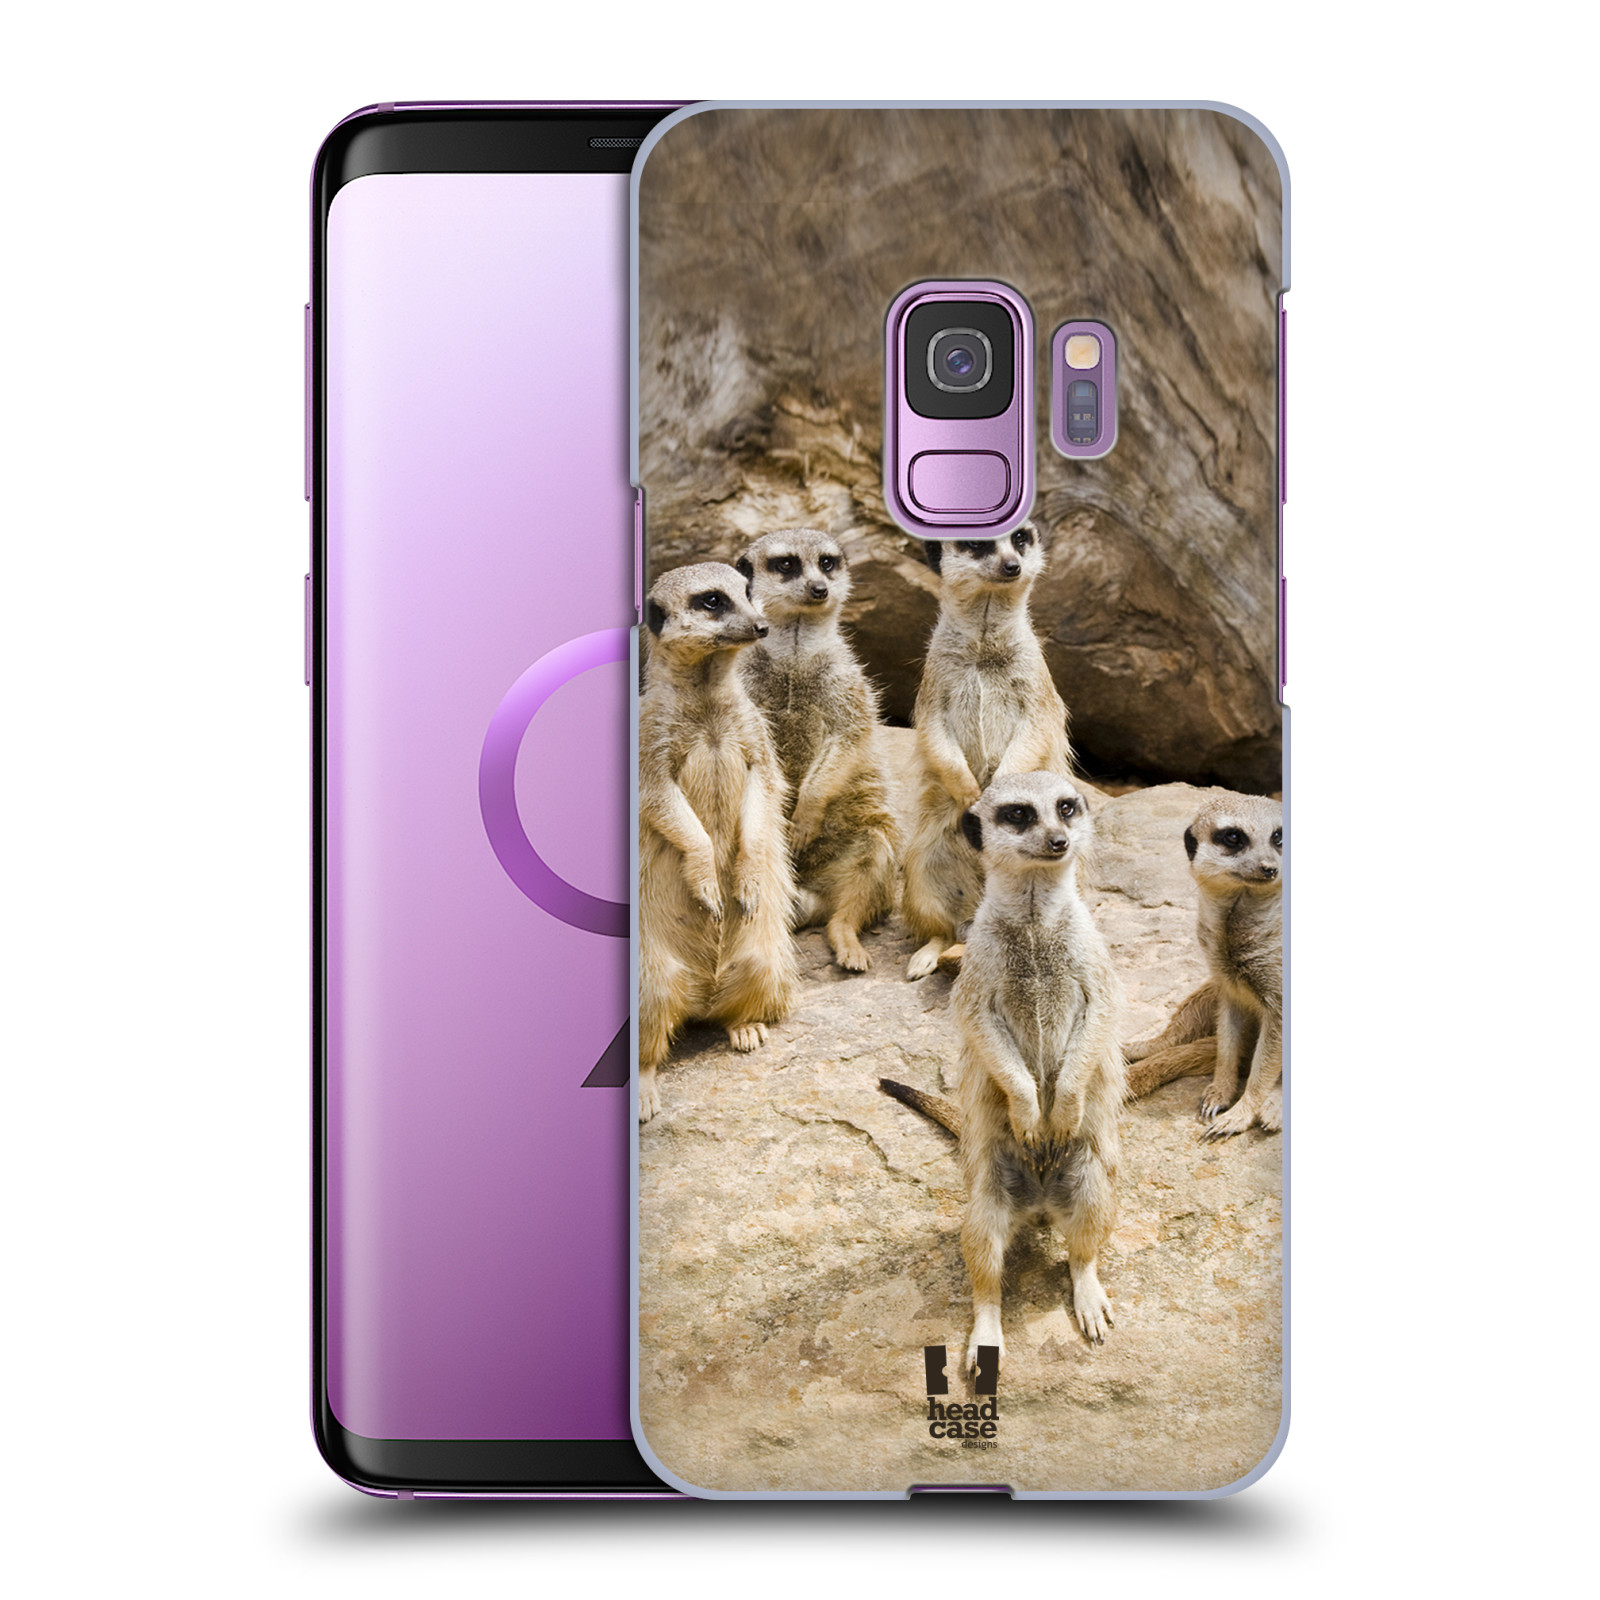 Zadní obal pro mobil Samsung Galaxy S9 - HEAD CASE - Svět zvířat roztomilé surikaty